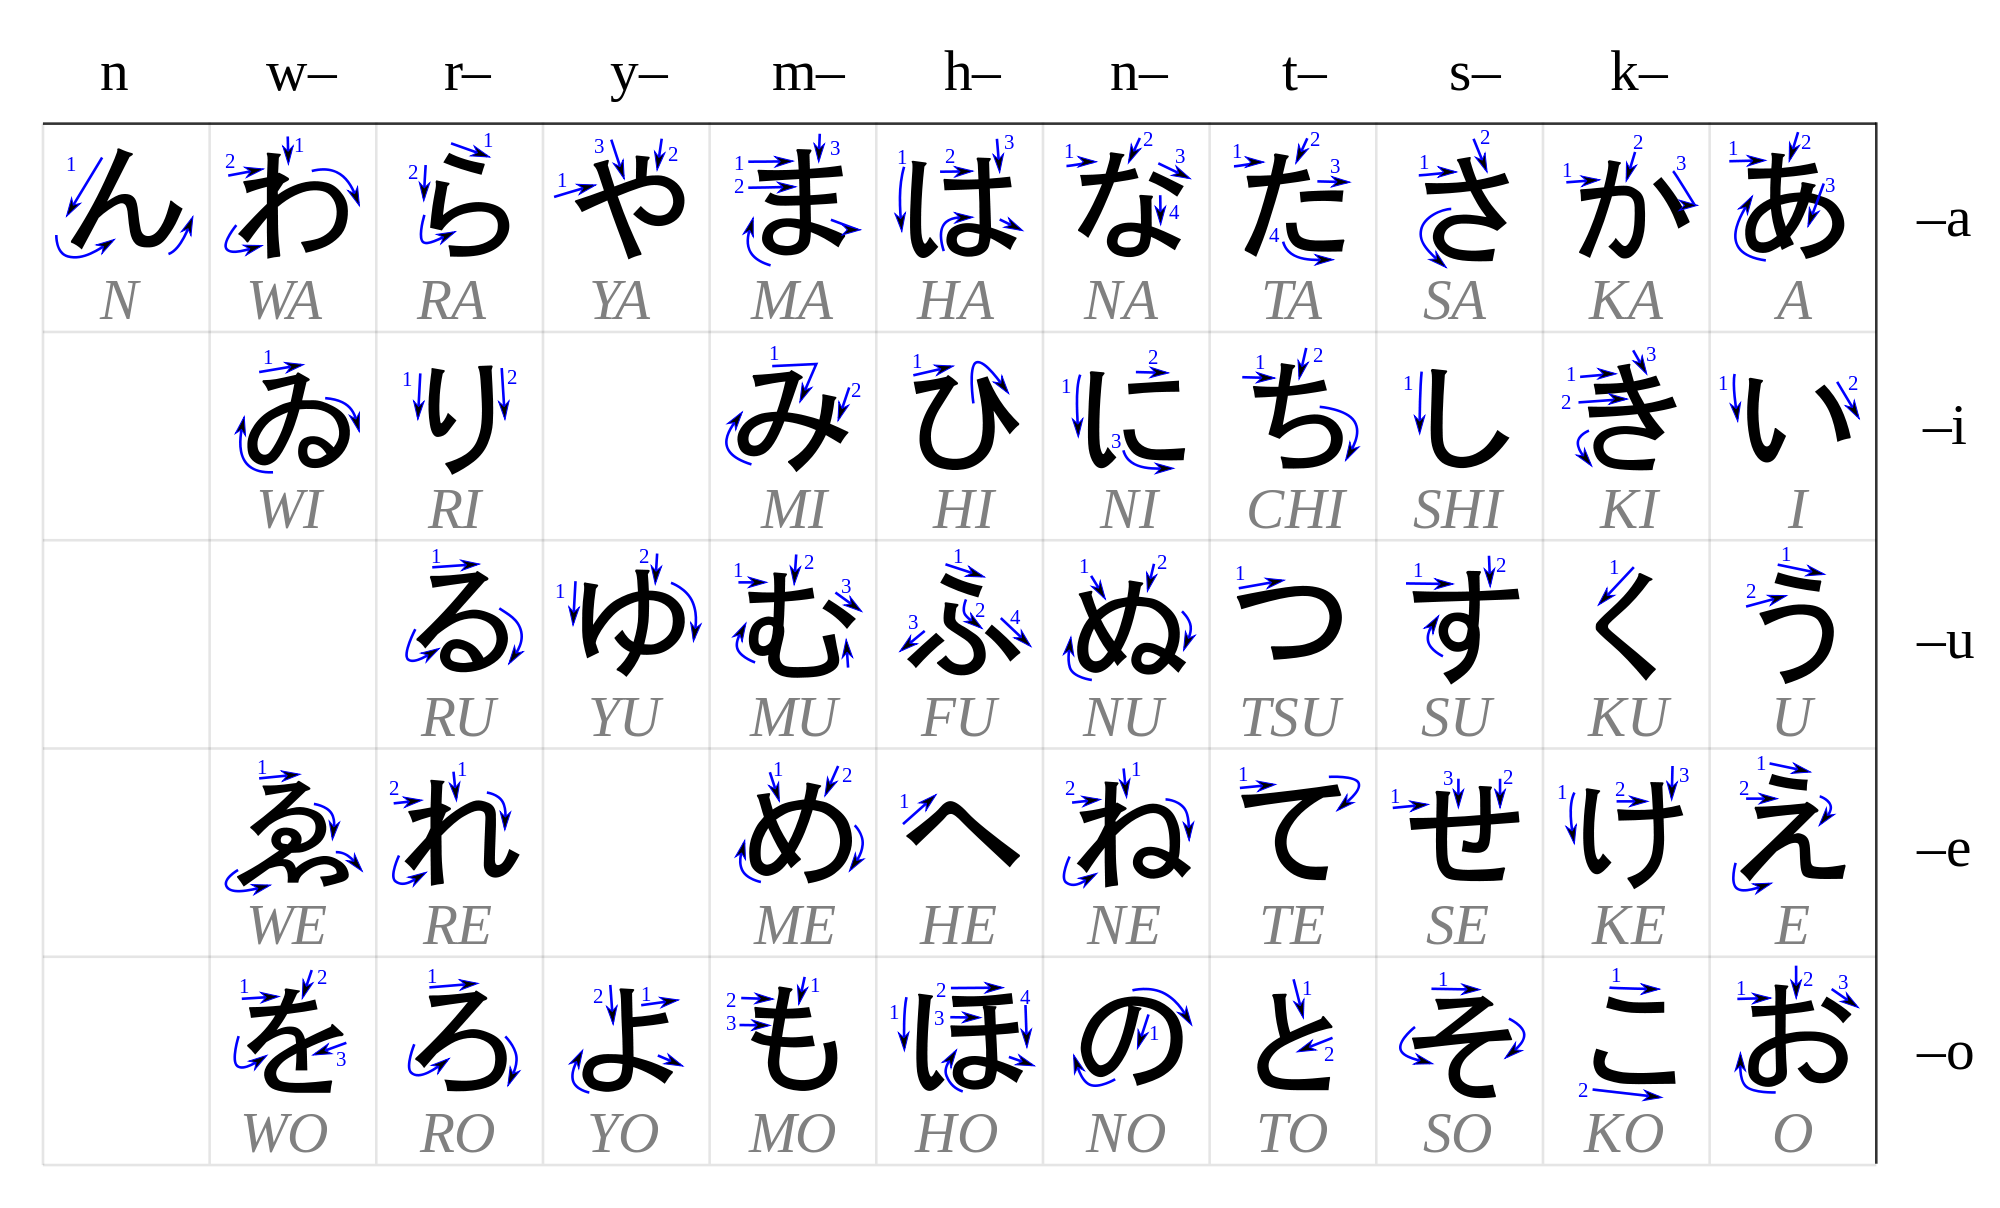 Japanese/Japanese writing system